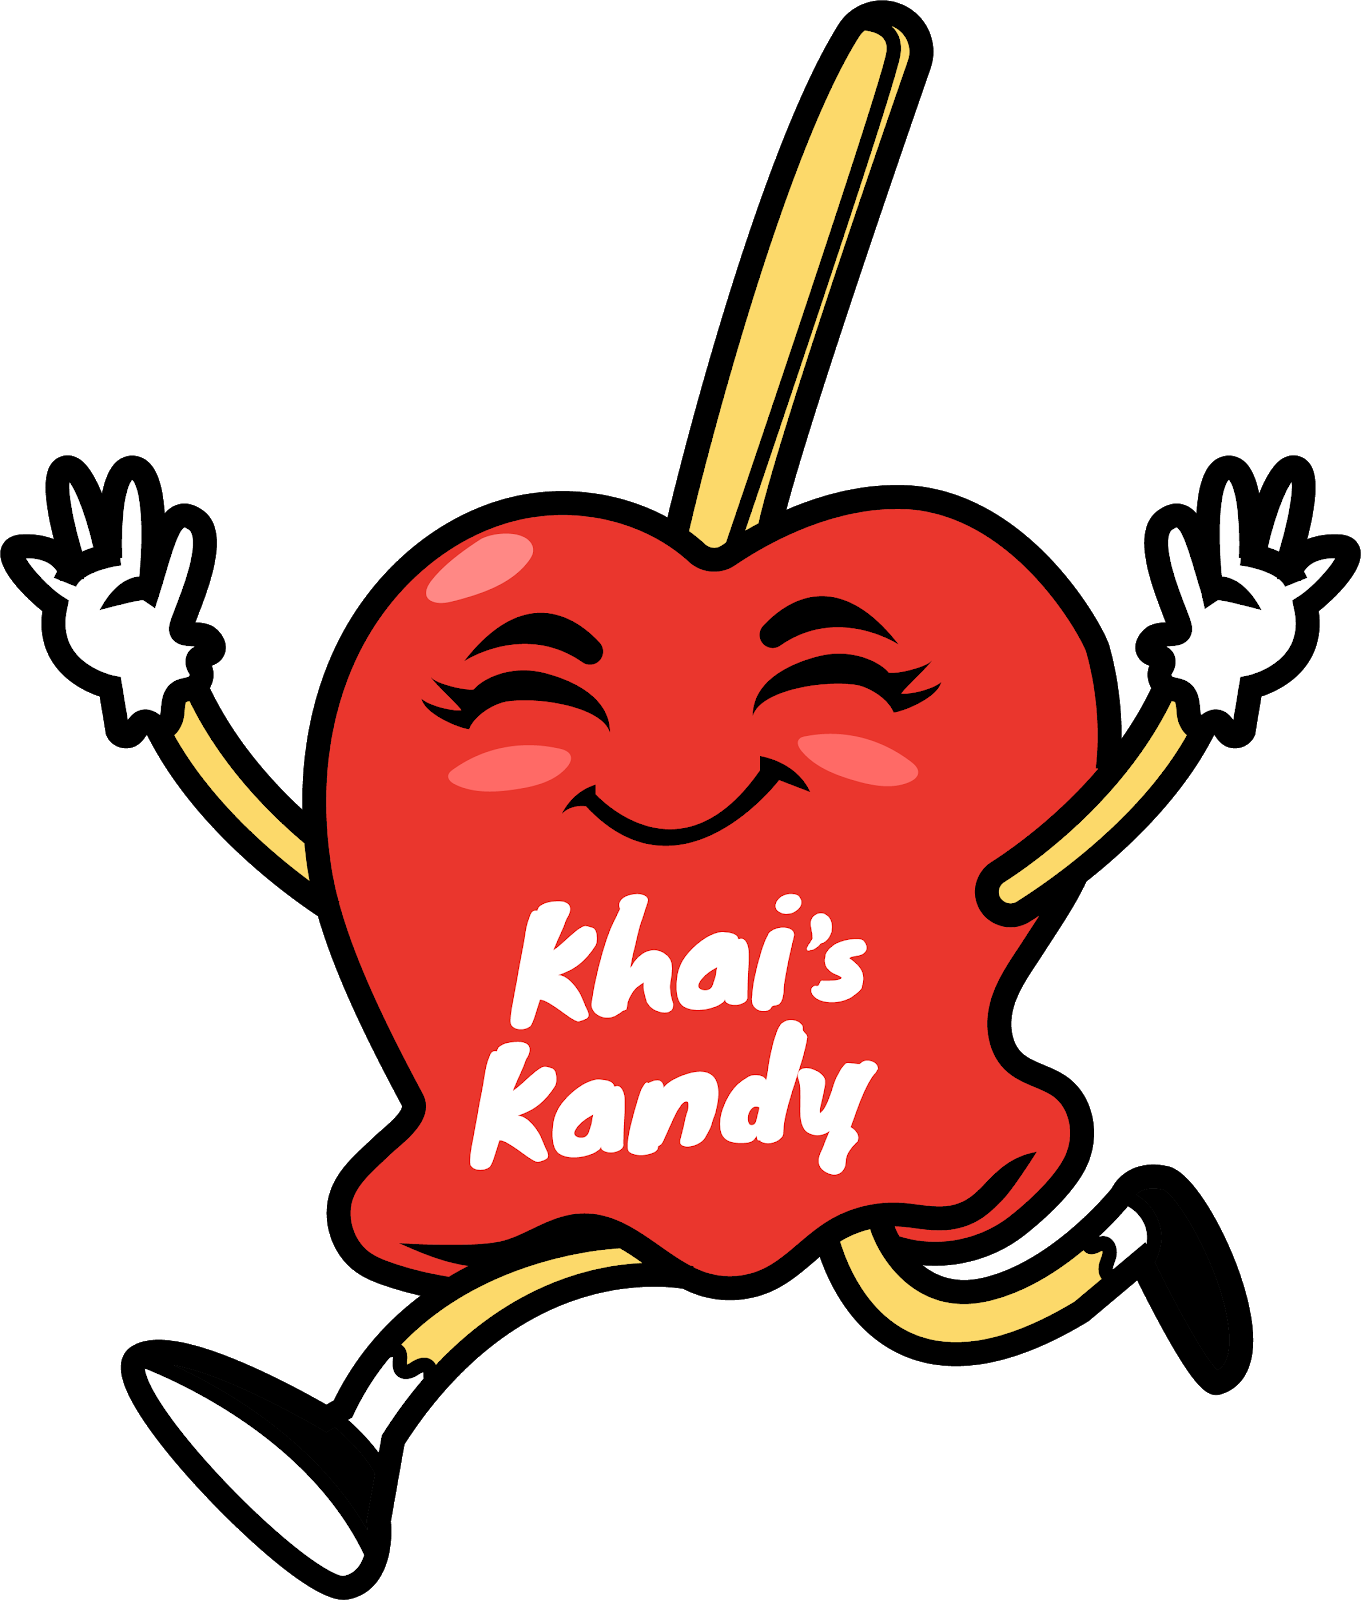 Khai's Kandy Apple